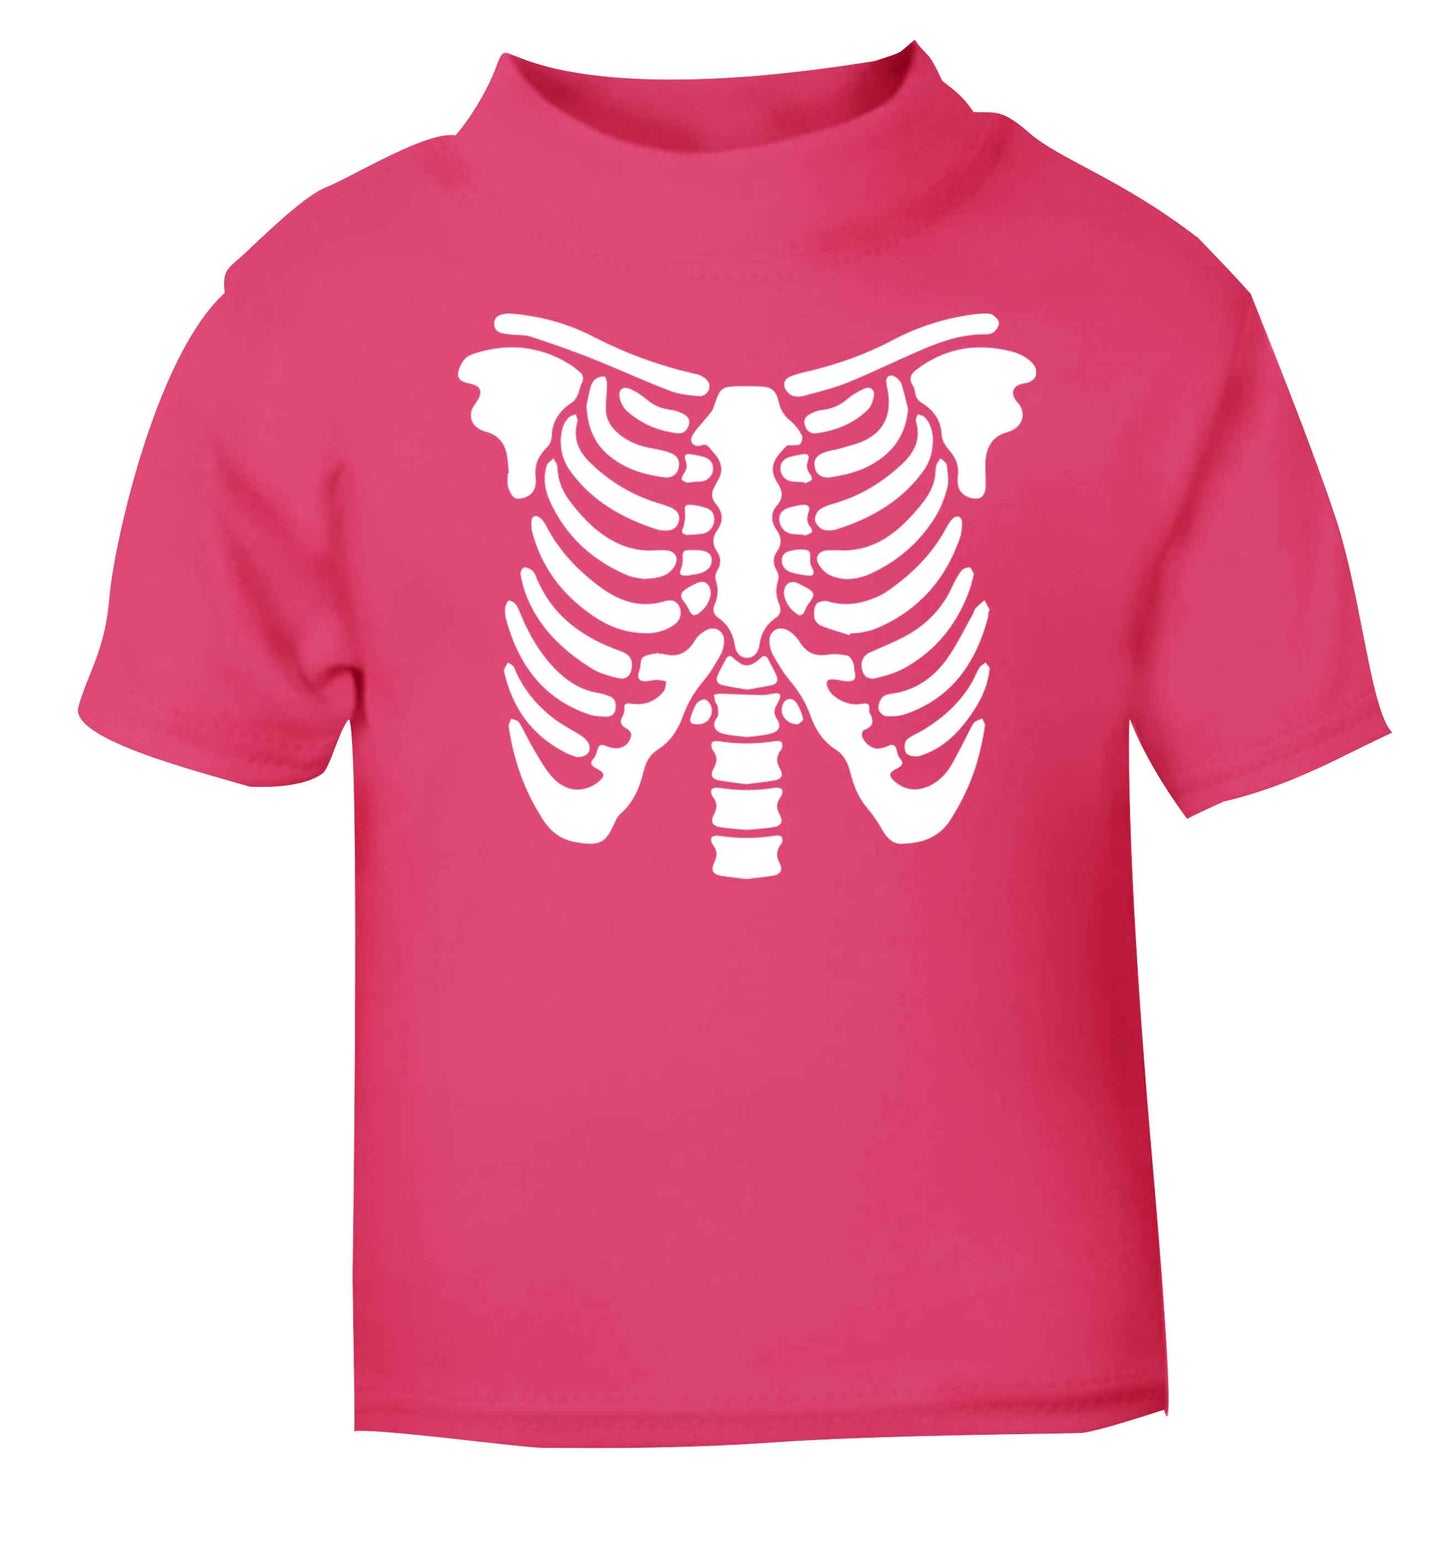 Skeleton ribcage pink baby toddler Tshirt 2 Years